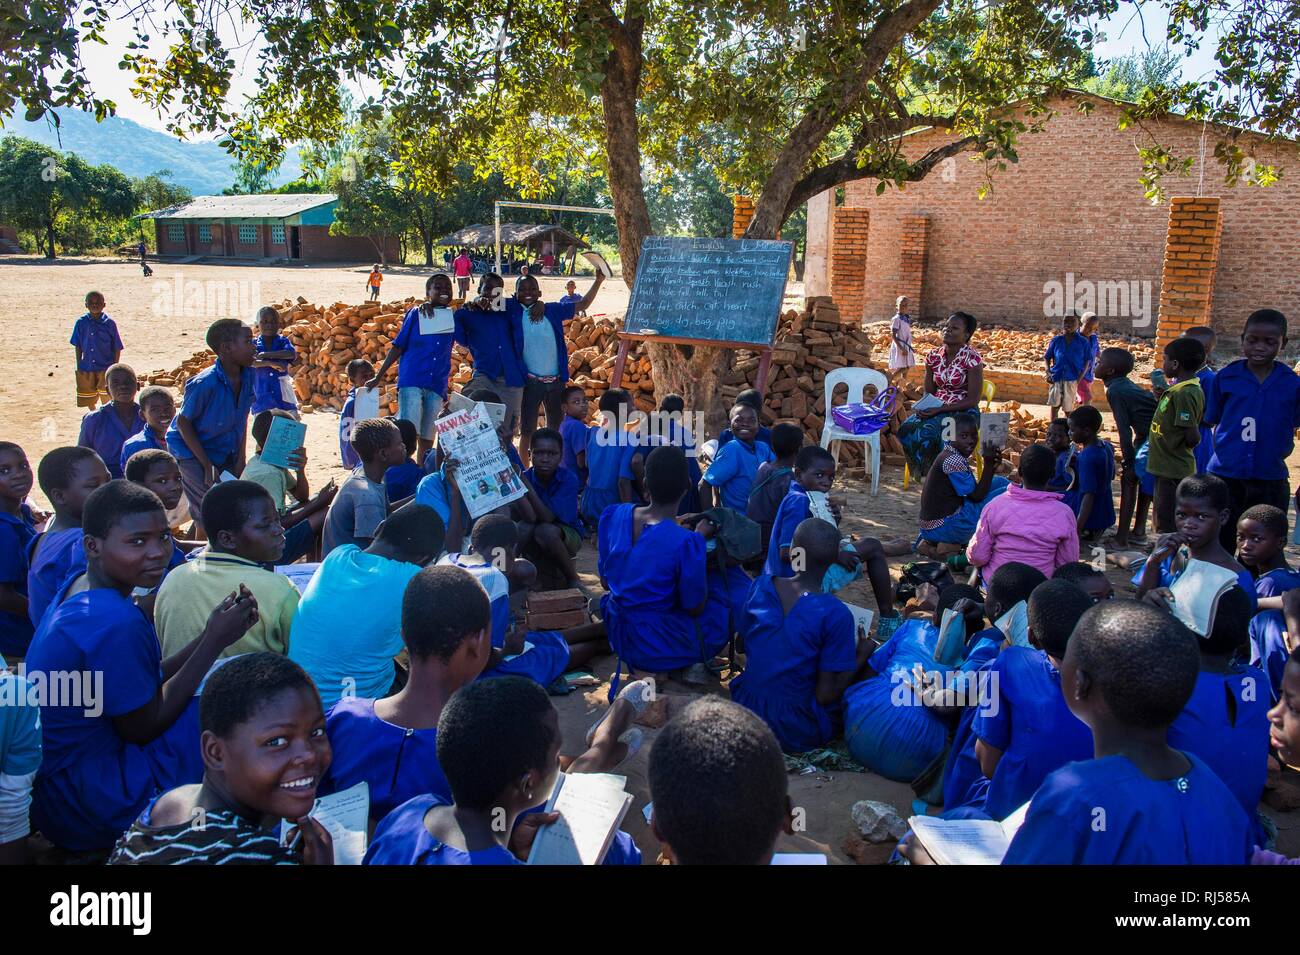 Grundschule außerhalb mit vielen Kindern, Schülerinnen und Schüler in der Klasse uniform, Liwonde Nationalpark, Malawi Stockfoto